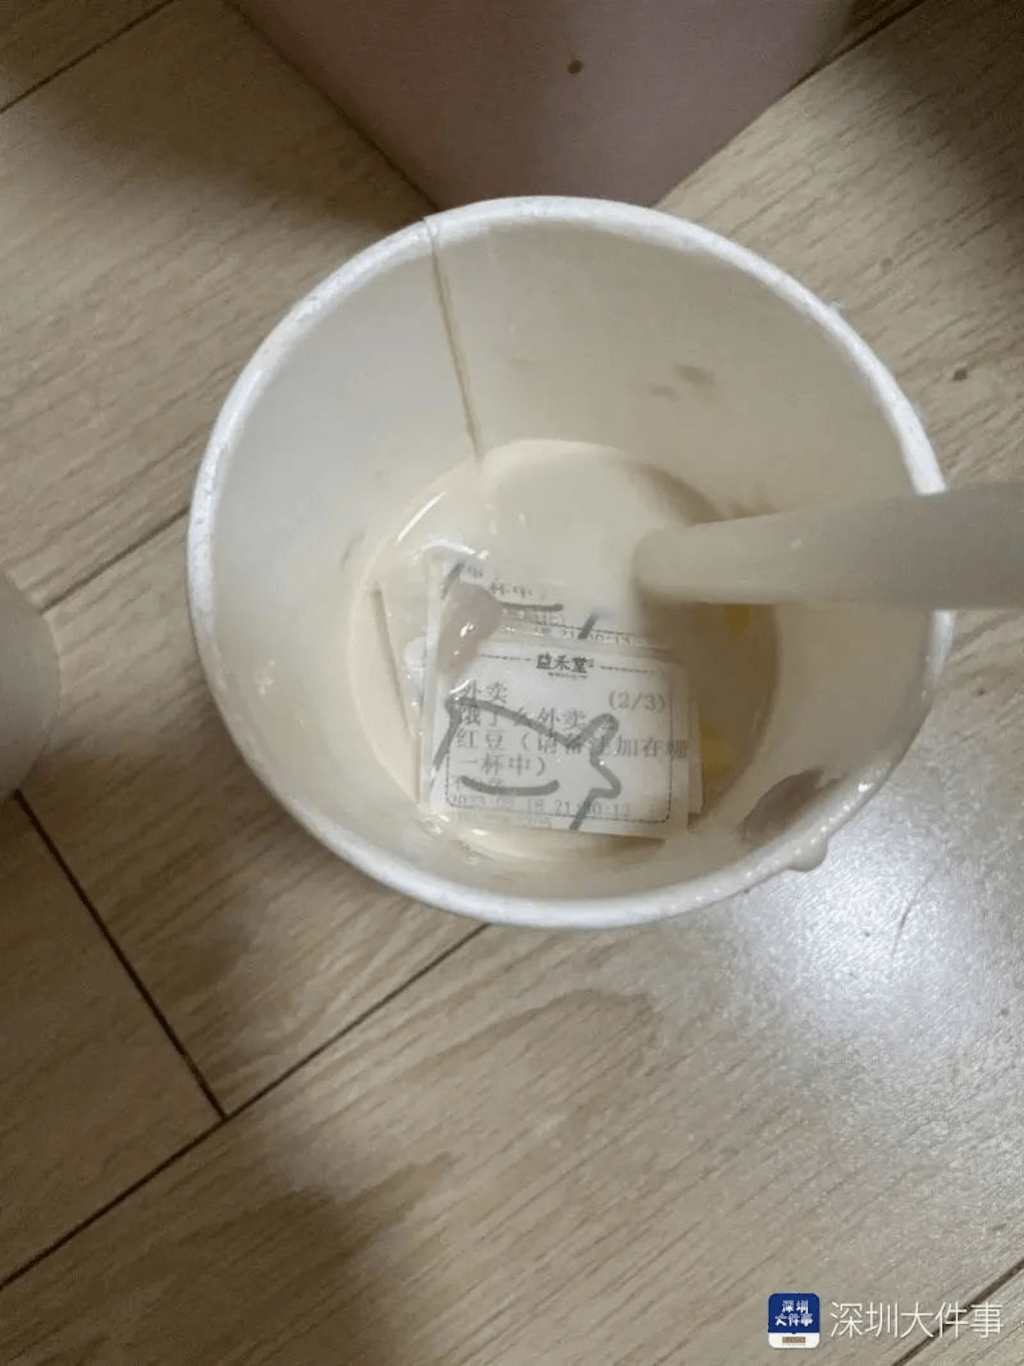 網民稱喝奶茶喝到一半發現杯底有標籤貼紙。